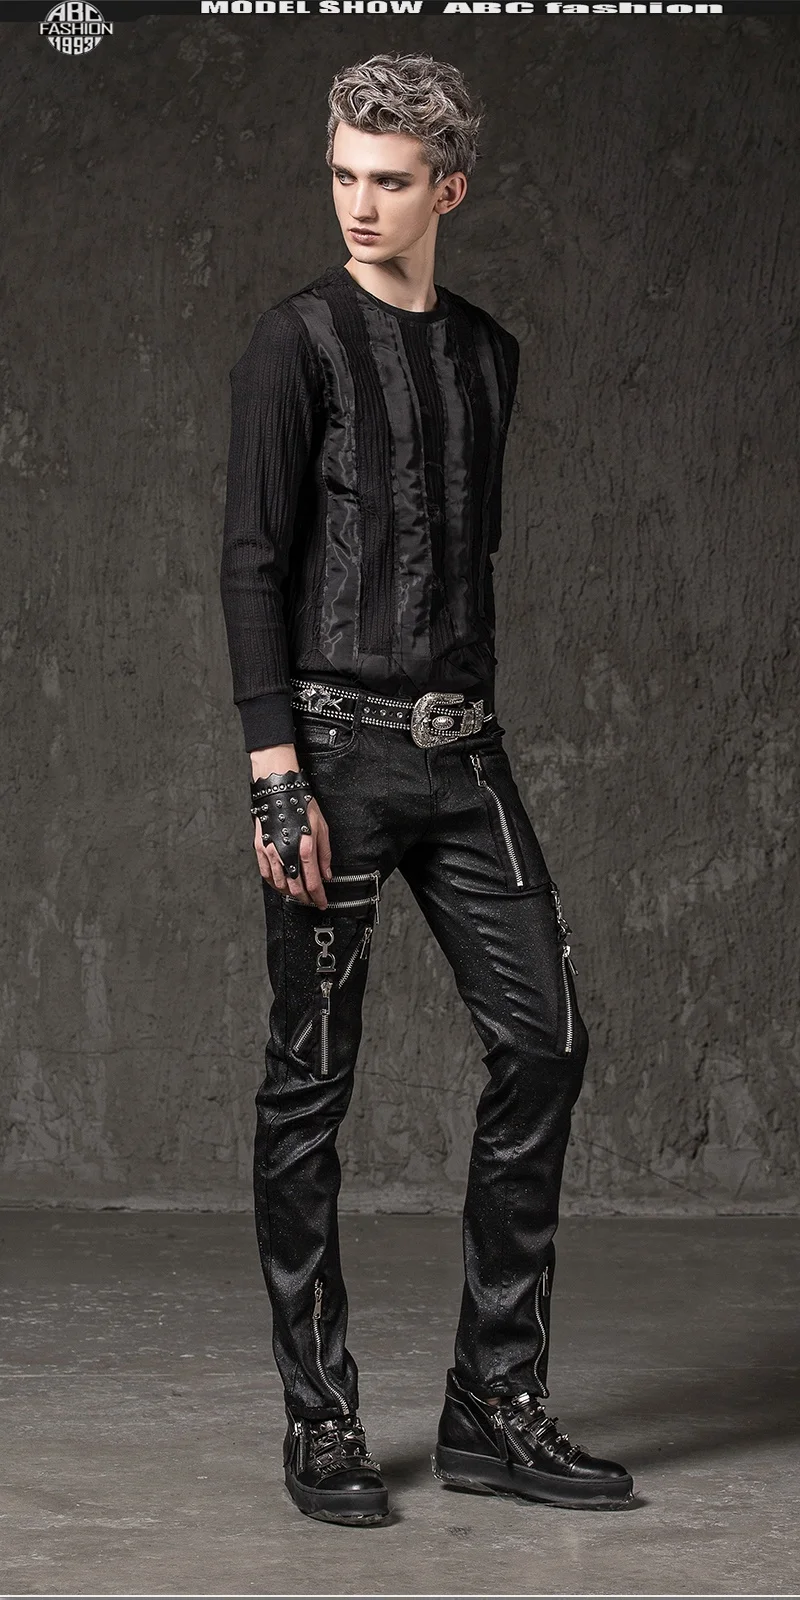 Мужские узкие черные брюки-карандаш на молнии в стиле панк-рок, модные брюки в стиле хип-хоп